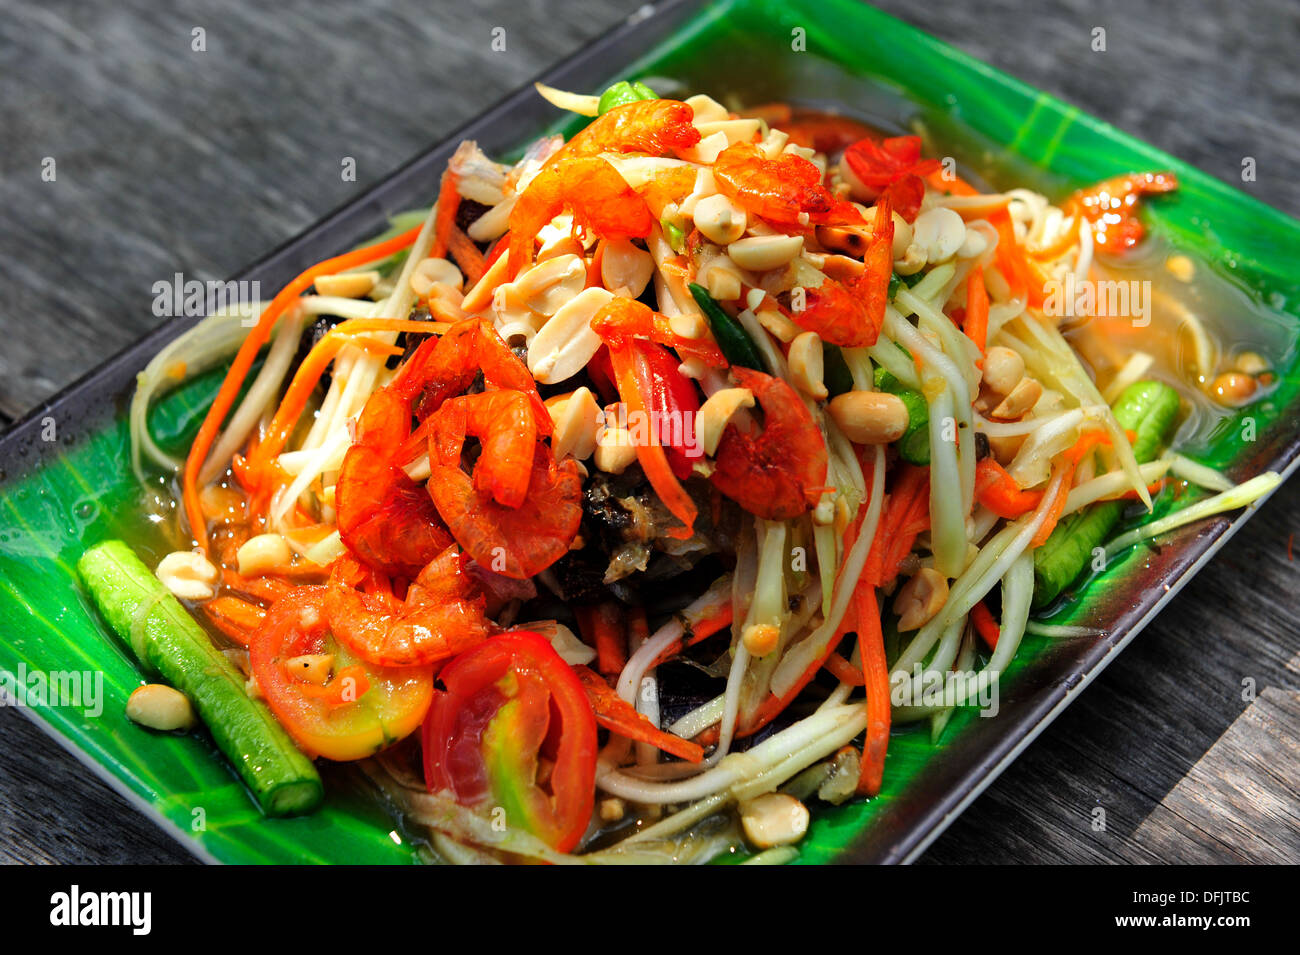 Geschmack von Thailand - alle Zeit Thai Lieblings-Salat - Somtam (würzige grüne Papaya-Salat) Stockfoto